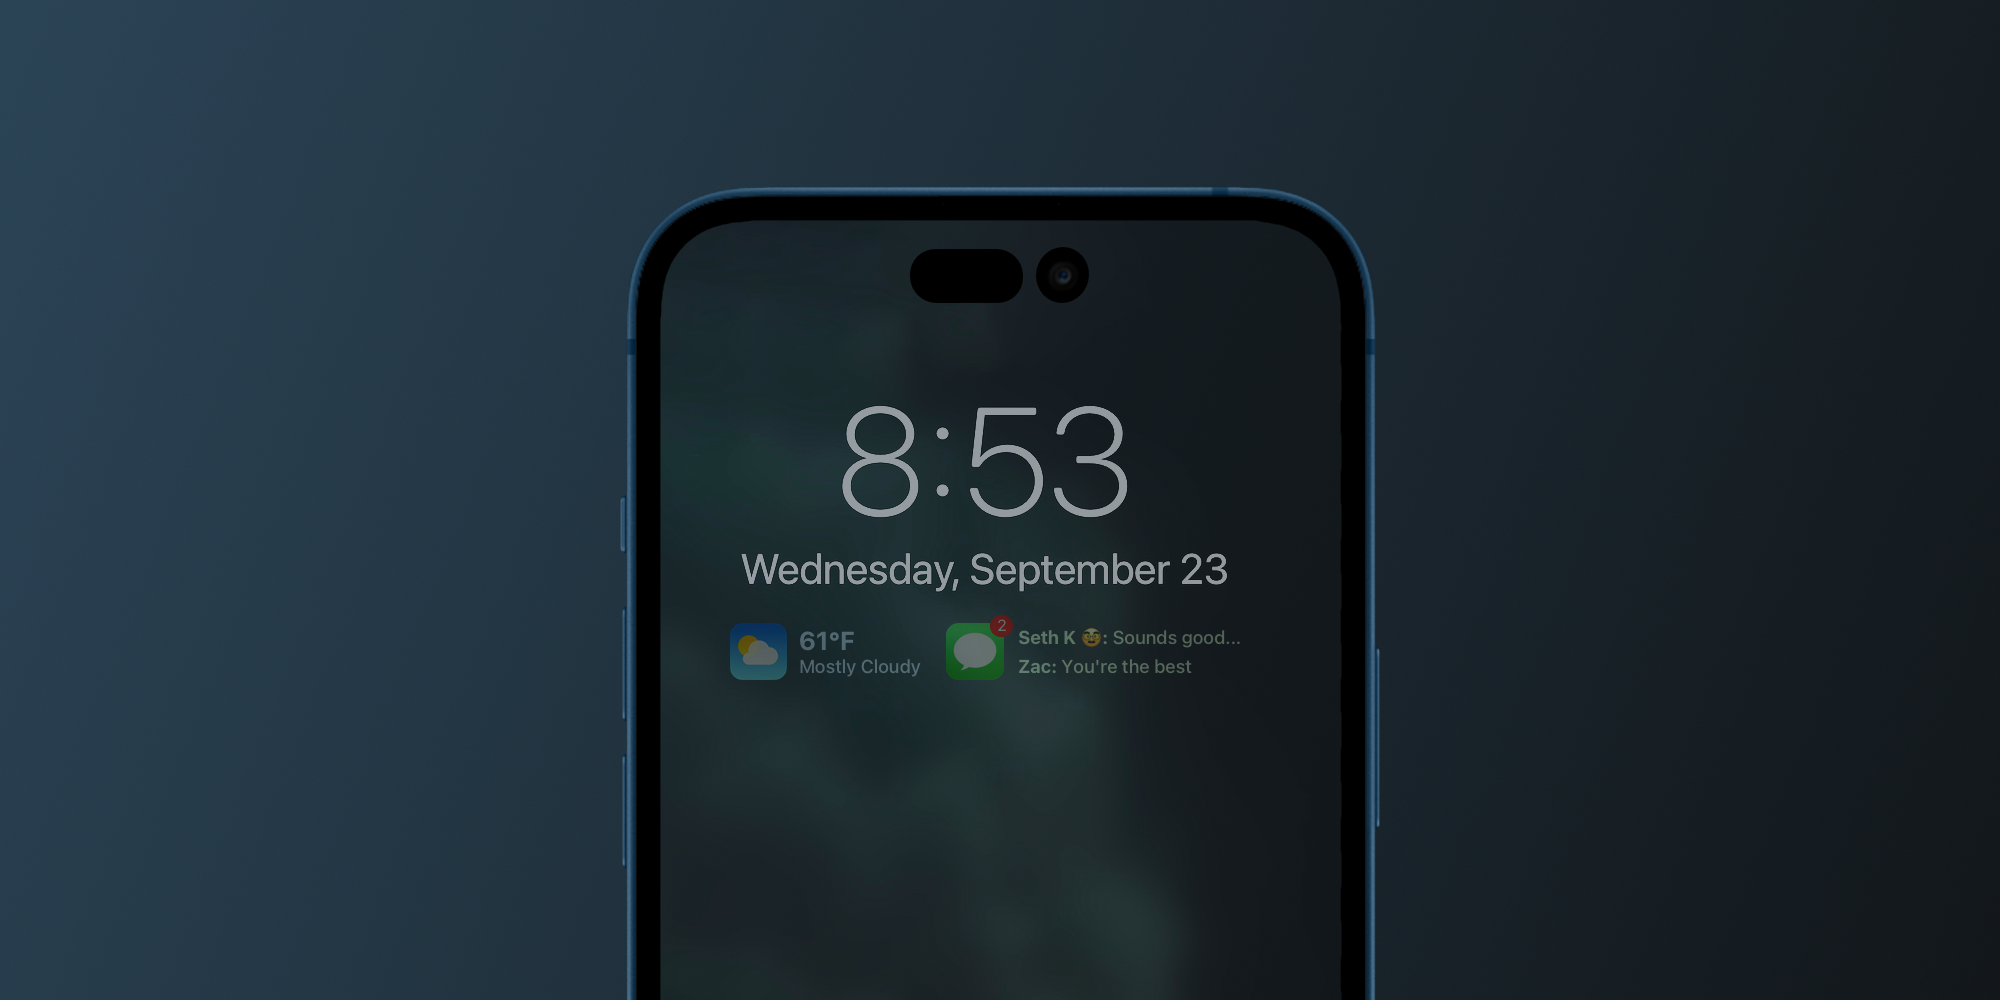 56.iOS 16: Tận hưởng trải nghiệm đỉnh cao với hệ điều hành mới nhất - iOS 16! Với giao diện tinh tế và tính năng thông minh cùng hiệu năng vượt trội, iPhone của bạn sẽ trở nên mượt mà và luôn sẵn sàng cho mọi tác vụ. Hãy tải ngay iOS 16 và khám phá thế giới công nghệ đầy tính năng mới nhé! 57.Samsung S10 Retro Nokia Case: Bạn là tín đồ của phong cách retro? Bạn đang sở hữu chiếc Samsung S10 đắt giá nhưng muốn tạo điểm nhấn riêng cho thương hiệu Nokia yêu thích? Hãy sắm ngay chiếc ốp điện thoại Samsung S10 Retro Nokia Case nhé! Thiết kế tinh xảo cùng với chất liệu đa dạng sẽ giúp bảo vệ điện thoại của bạn đồng thời tạo cảm giác thú vị và thời thượng. 58.Nokia 1280 hình nền: Nếu bạn yêu thích Nokia 1280, bạn sẽ không muốn bỏ qua bộ sưu tập hình nền của chúng tôi. Chúng tôi đã tuyển chọn những hình nền tuyệt đẹp với màu sắc tươi sáng và độ phân giải siêu nét để bạn thỏa sức trang trí cho chiếc điện thoại yêu quý của mình. Tải ngay và cùng thống trị màn hình điện thoại bạn nhé! 59.Ốp điện thoại Nokia giả cho iPhone: Những chiếc ốp điện thoại Nokia giả cho iPhone của chúng tôi sẽ là lựa chọn hoàn hảo cho những ai yêu thích văn hóa retro. Thiết kế độc đáo cùng với chất liệu cao cấp sẽ giúp bảo vệ điện thoại của bạn cùng lúc tạo phong cách thời thượng và đáng nhớ. Thêm một bước đi đột phá vào thế giới trong tầm tay của bạn với ốp điện Nokia giả cho iPhone nhé! 60.iPhone 12 Pro Max Genshin Impact Gaming test: Bạn là một game thủ đích thực và đang cân nhắc mua chiếc iPhone 12 Pro Max mới nhất để trải nghiệm game Genshin Impact đỉnh cao? Đừng bỏ lỡ video test game iPhone 12 Pro Max Genshin Impact của chúng tôi. Đây là cơ hội để bạn tận hưởng toàn bộ khả năng hiển thị, âm thanh và độ bền của chiếc điện thoại này trong những pha đối đầu hấp dẫn nhất. Xem ngay và quyết định cho mình chiếc iPhone 12 Pro Max đúng chất lượng nhất!